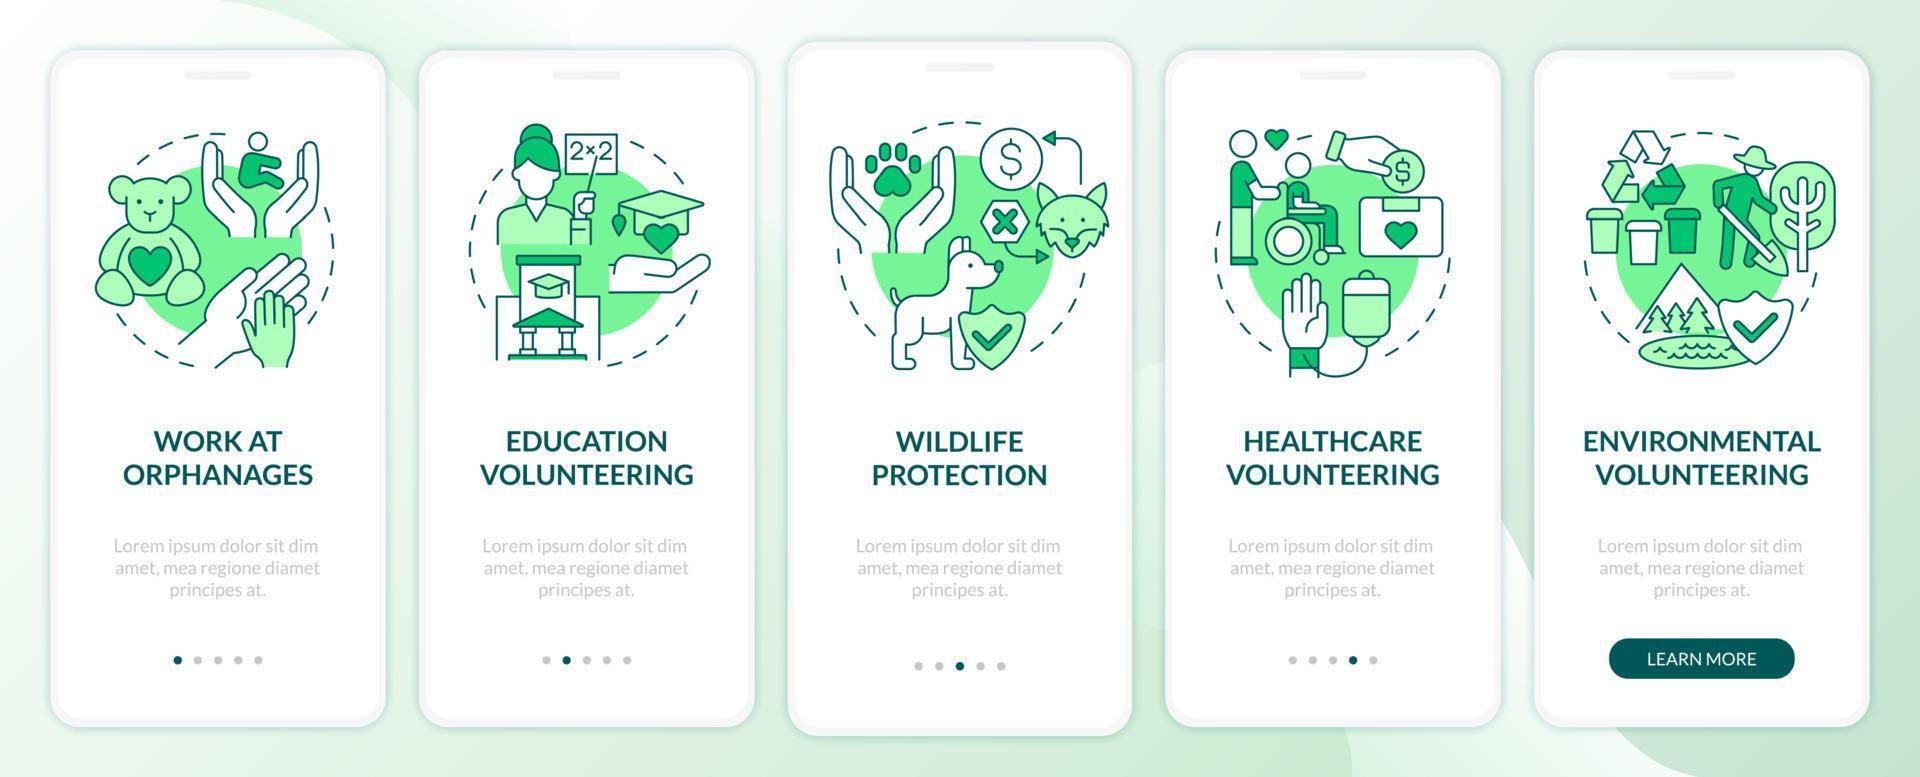 vrijwilligerswerk groene onboarding mobiele app paginascherm. sociale hulpverlening 4 stappen grafische instructies met concepten. ui, ux, gui vectorsjabloon met lineaire kleurenillustraties vector